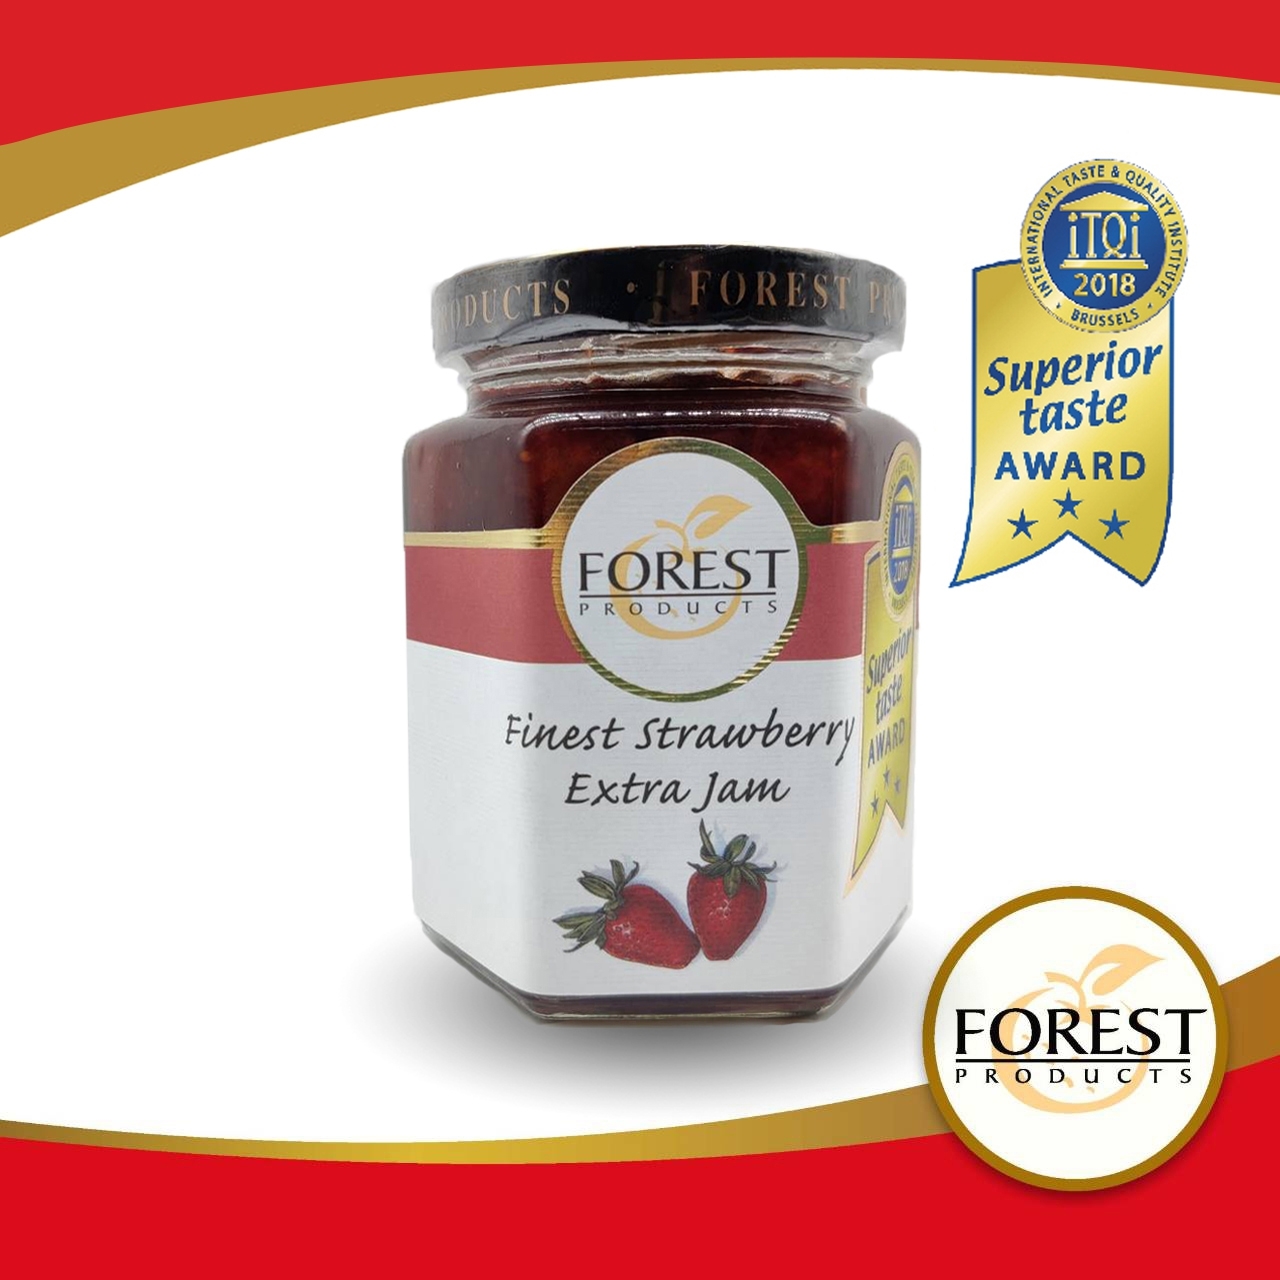 แยมสตรอเบอร์รี่ (Finest Strawberry Extra Jam) ตรา Forest Products